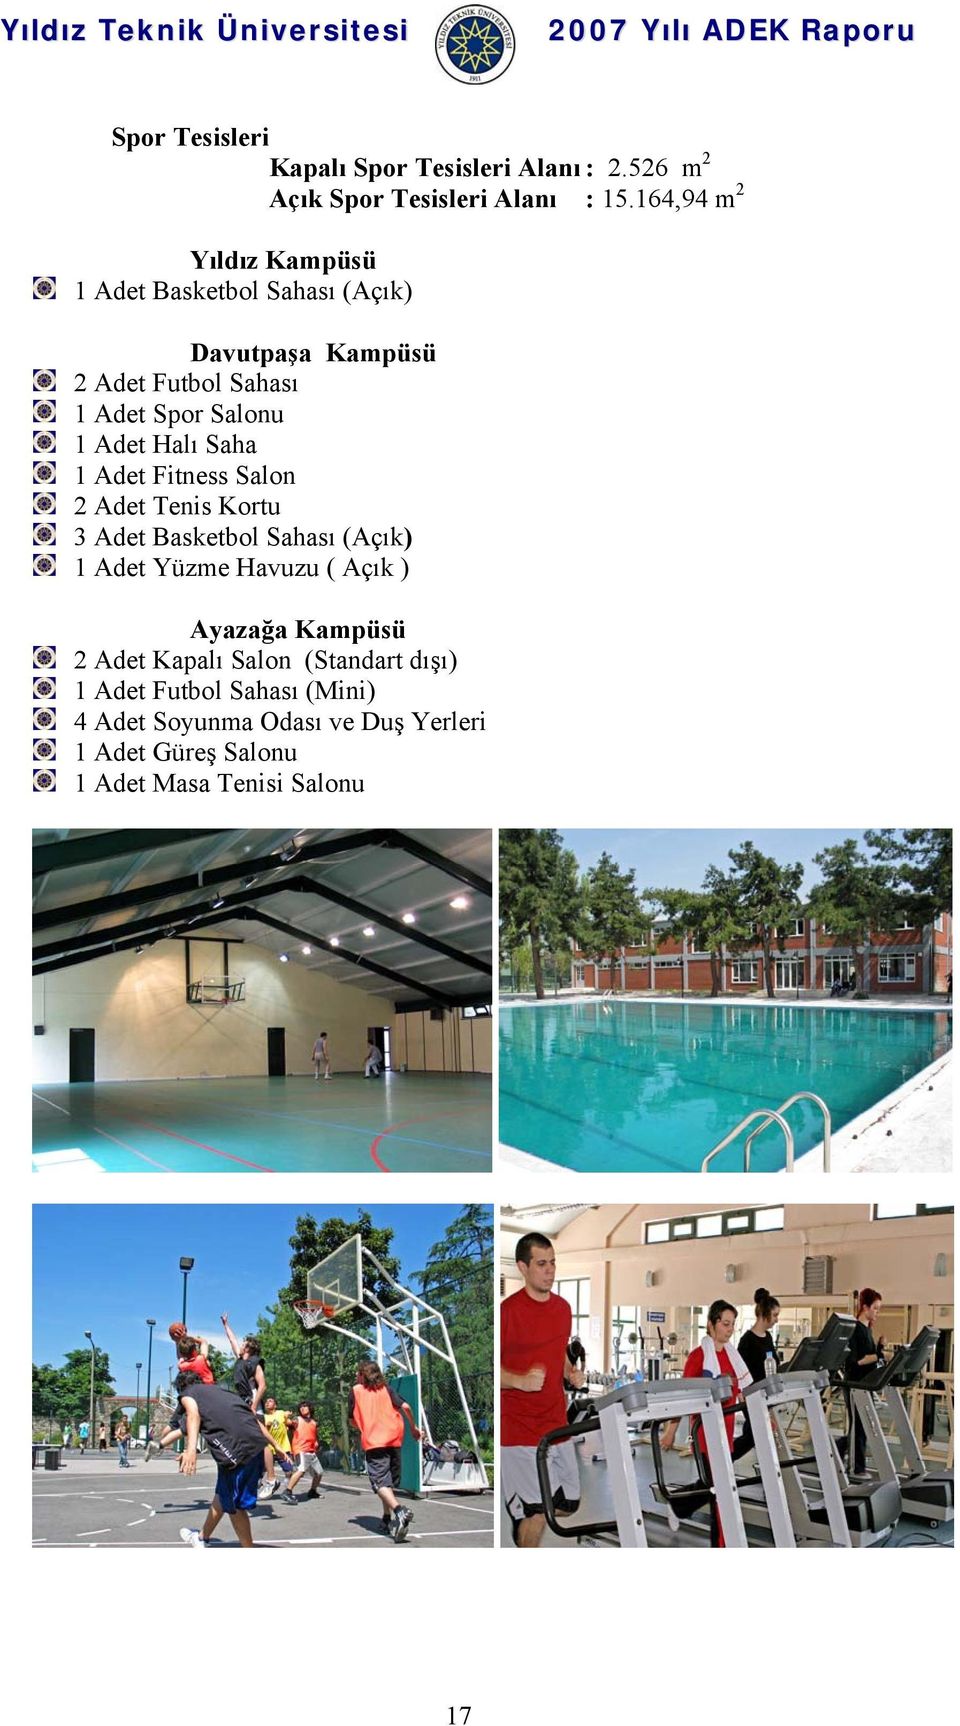 Adet Halı Saha 1 Adet Fitness Salon 2 Adet Tenis Kortu 3 Adet Basketbol Sahası (Açık) 1 Adet Yüzme Havuzu ( Açık )